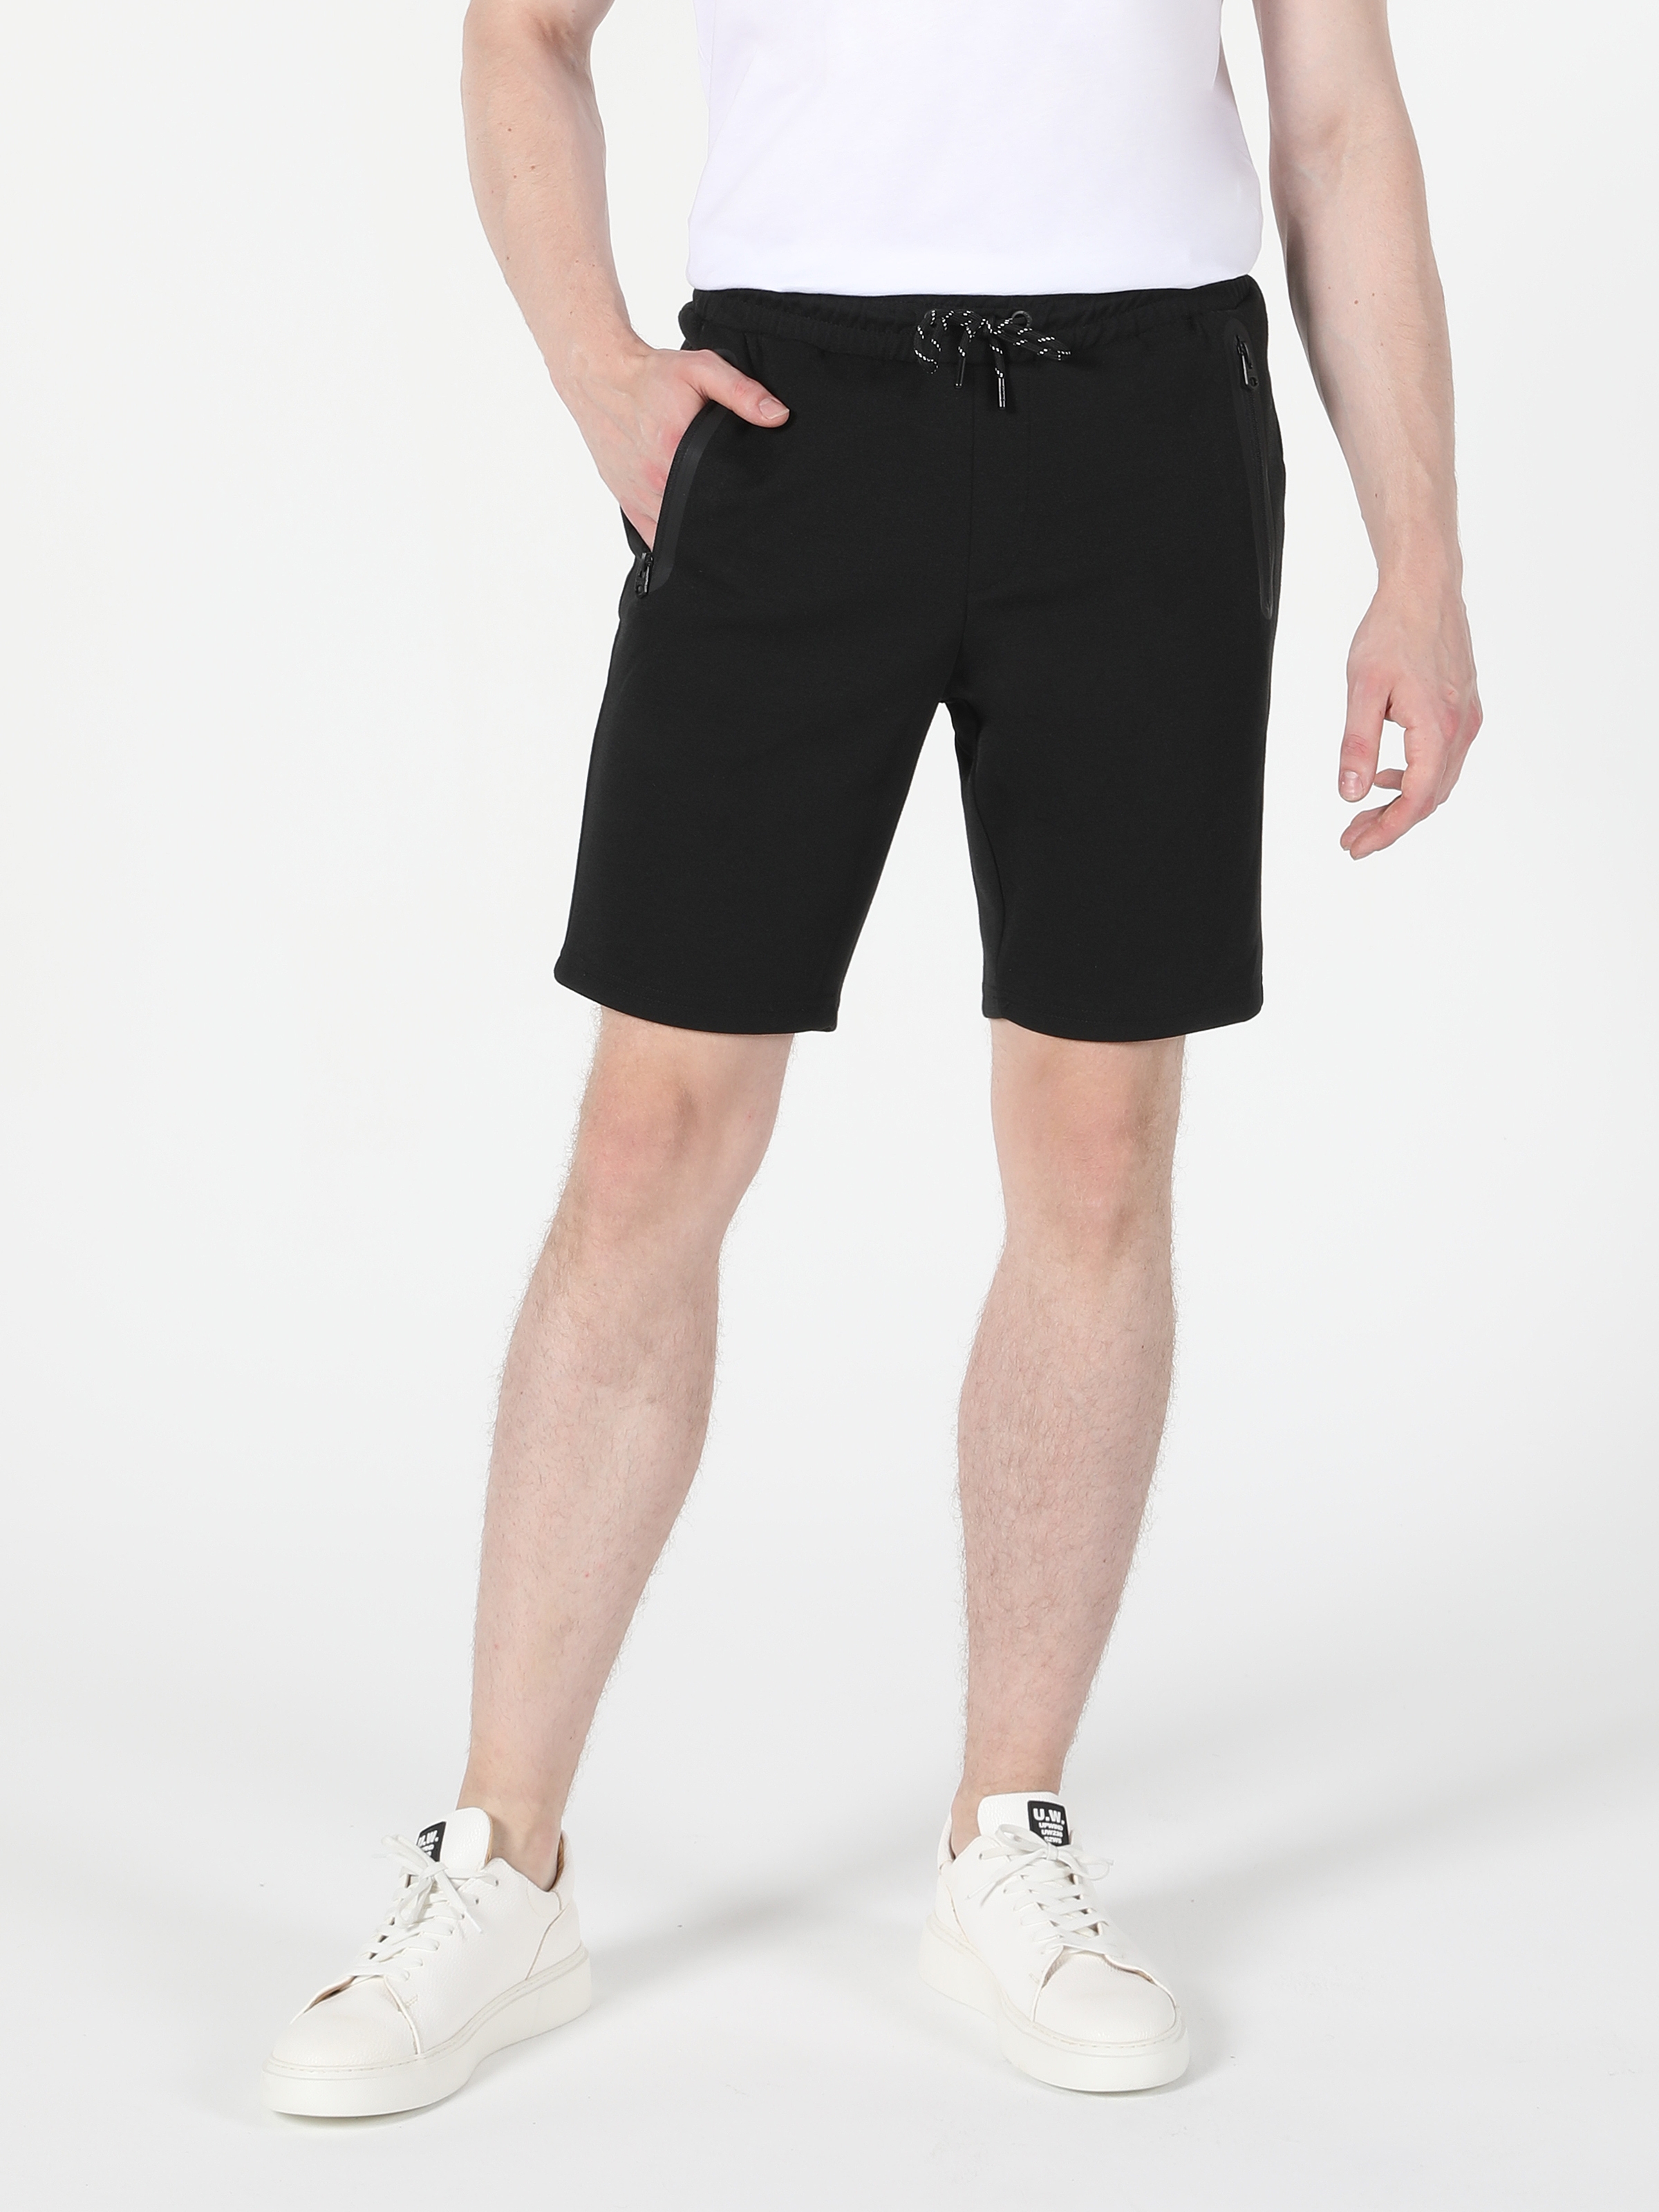 Afișați detalii pentru Short / Pantaloni Scurti De Barbati Negru Slim Fit  